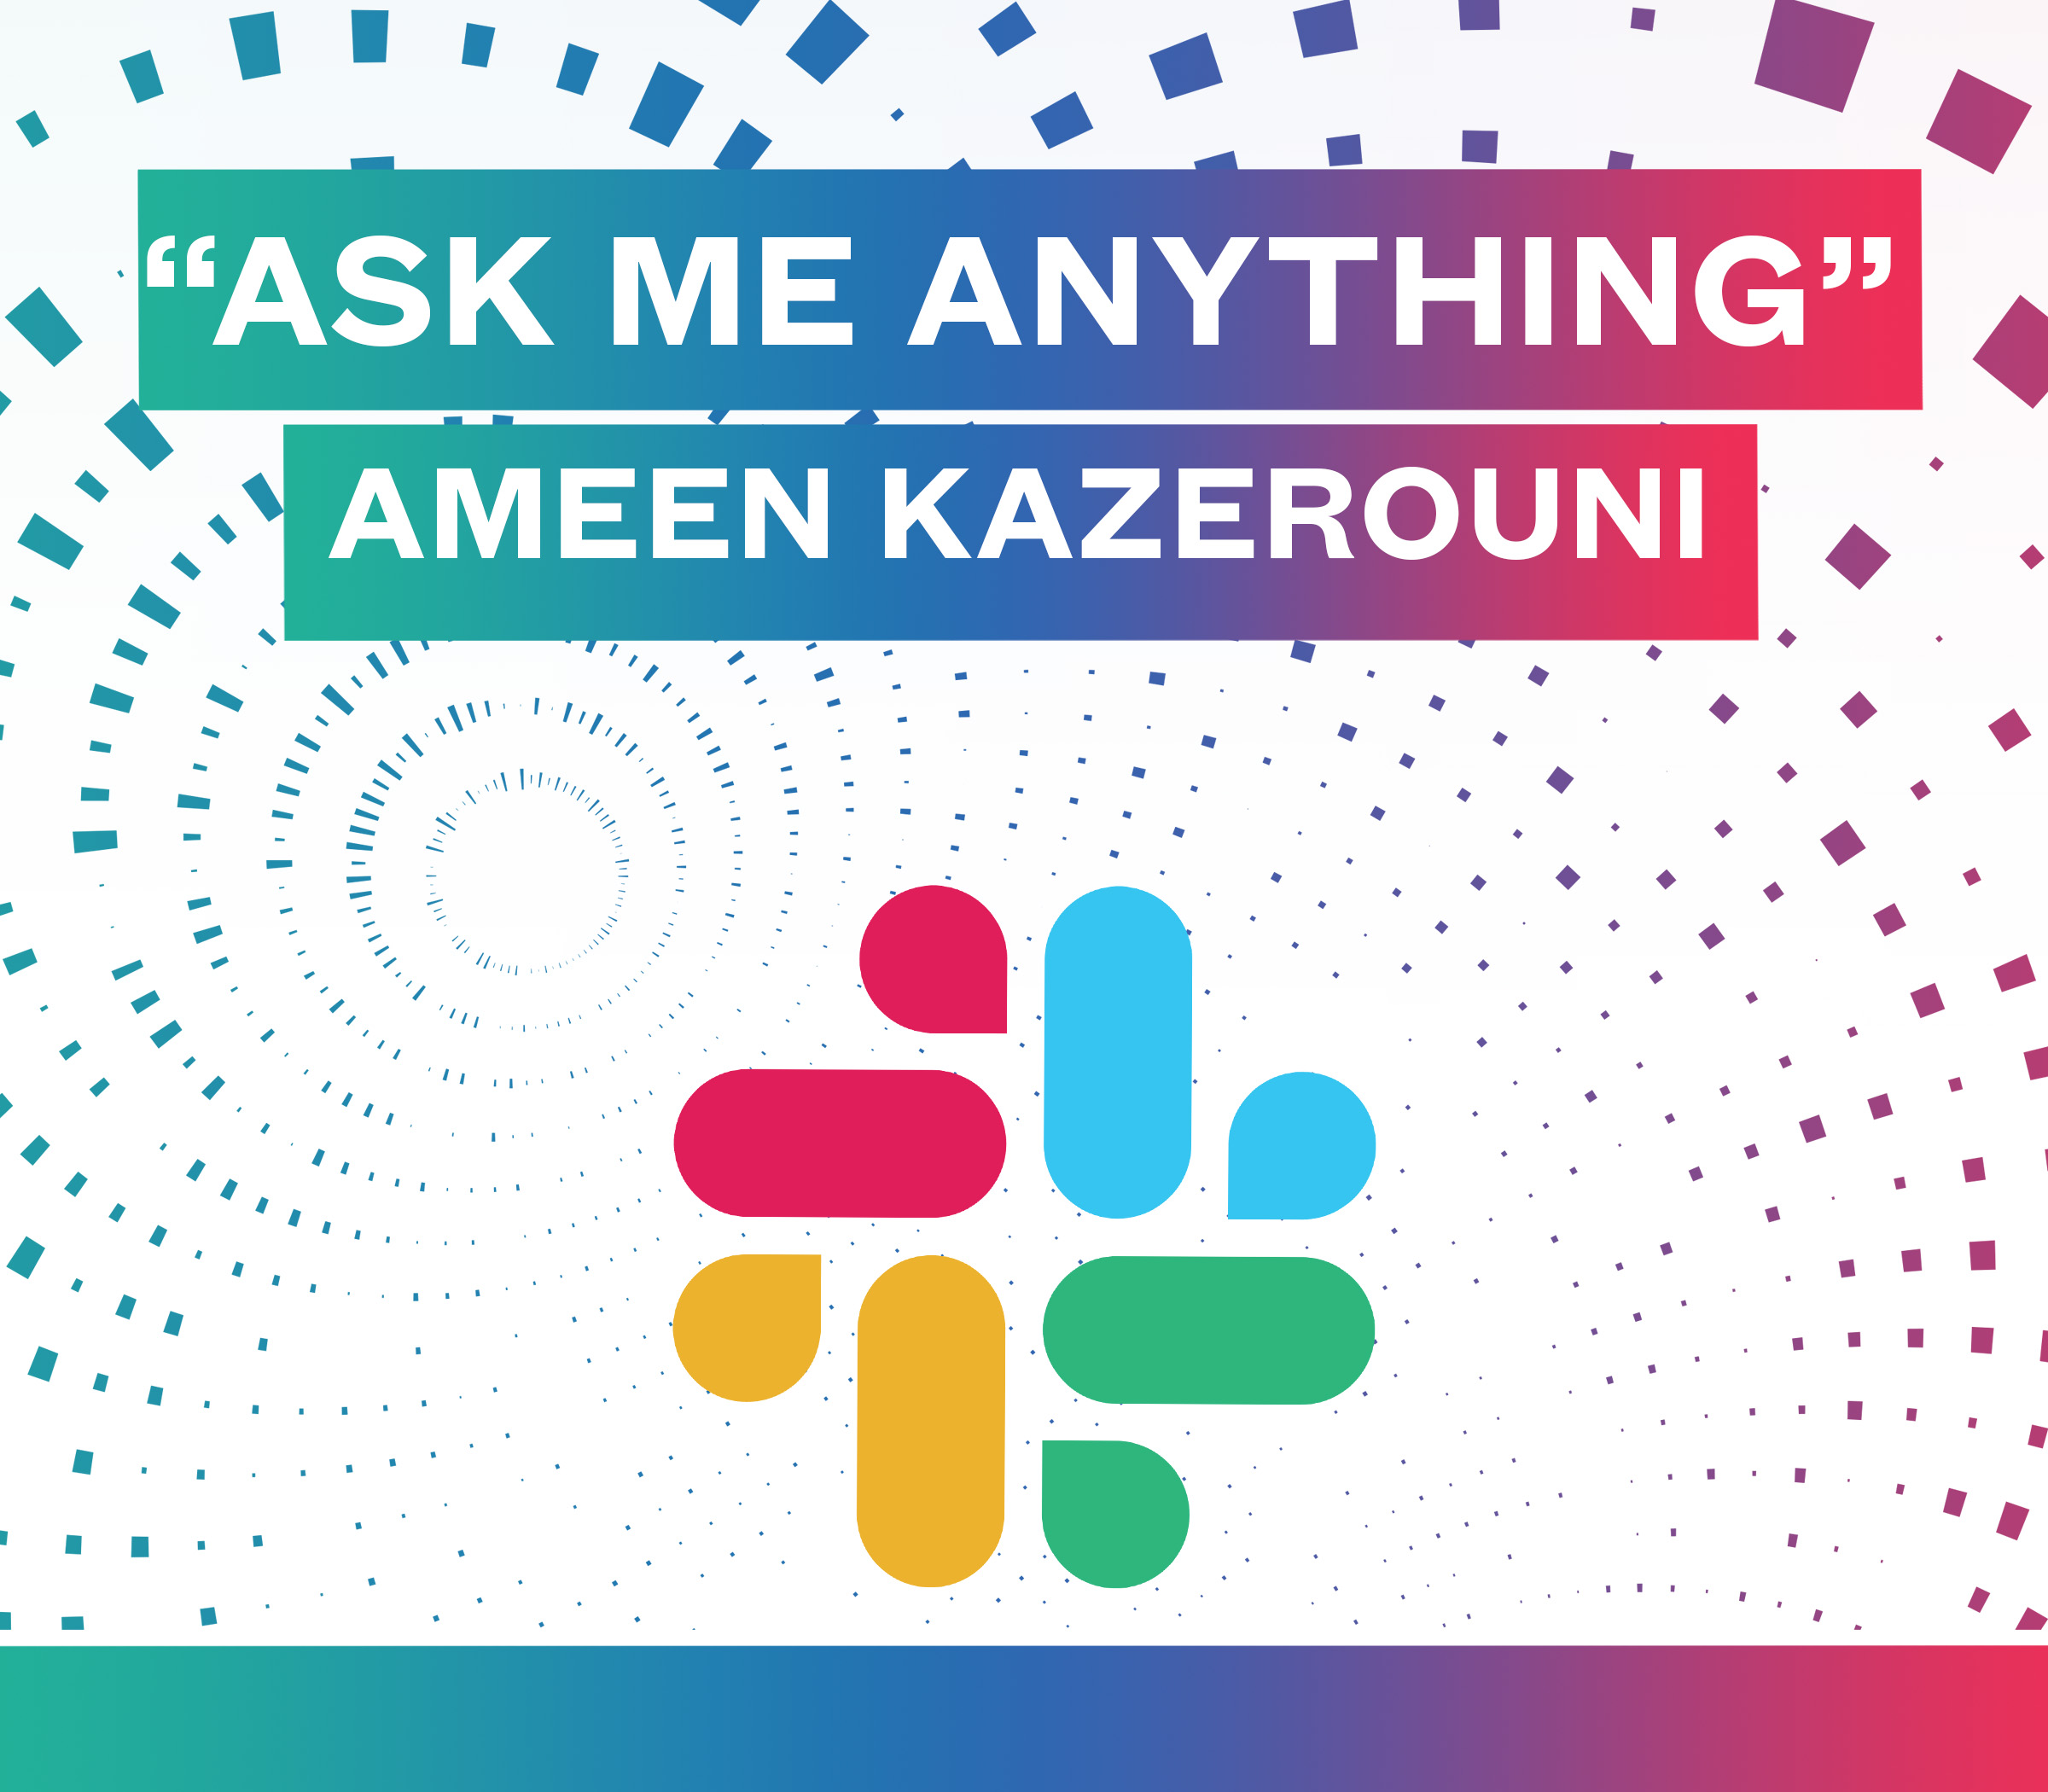 https://ai4.io/blog/2020/03/19/ask-me-anything-with-ameen-kazerouni/